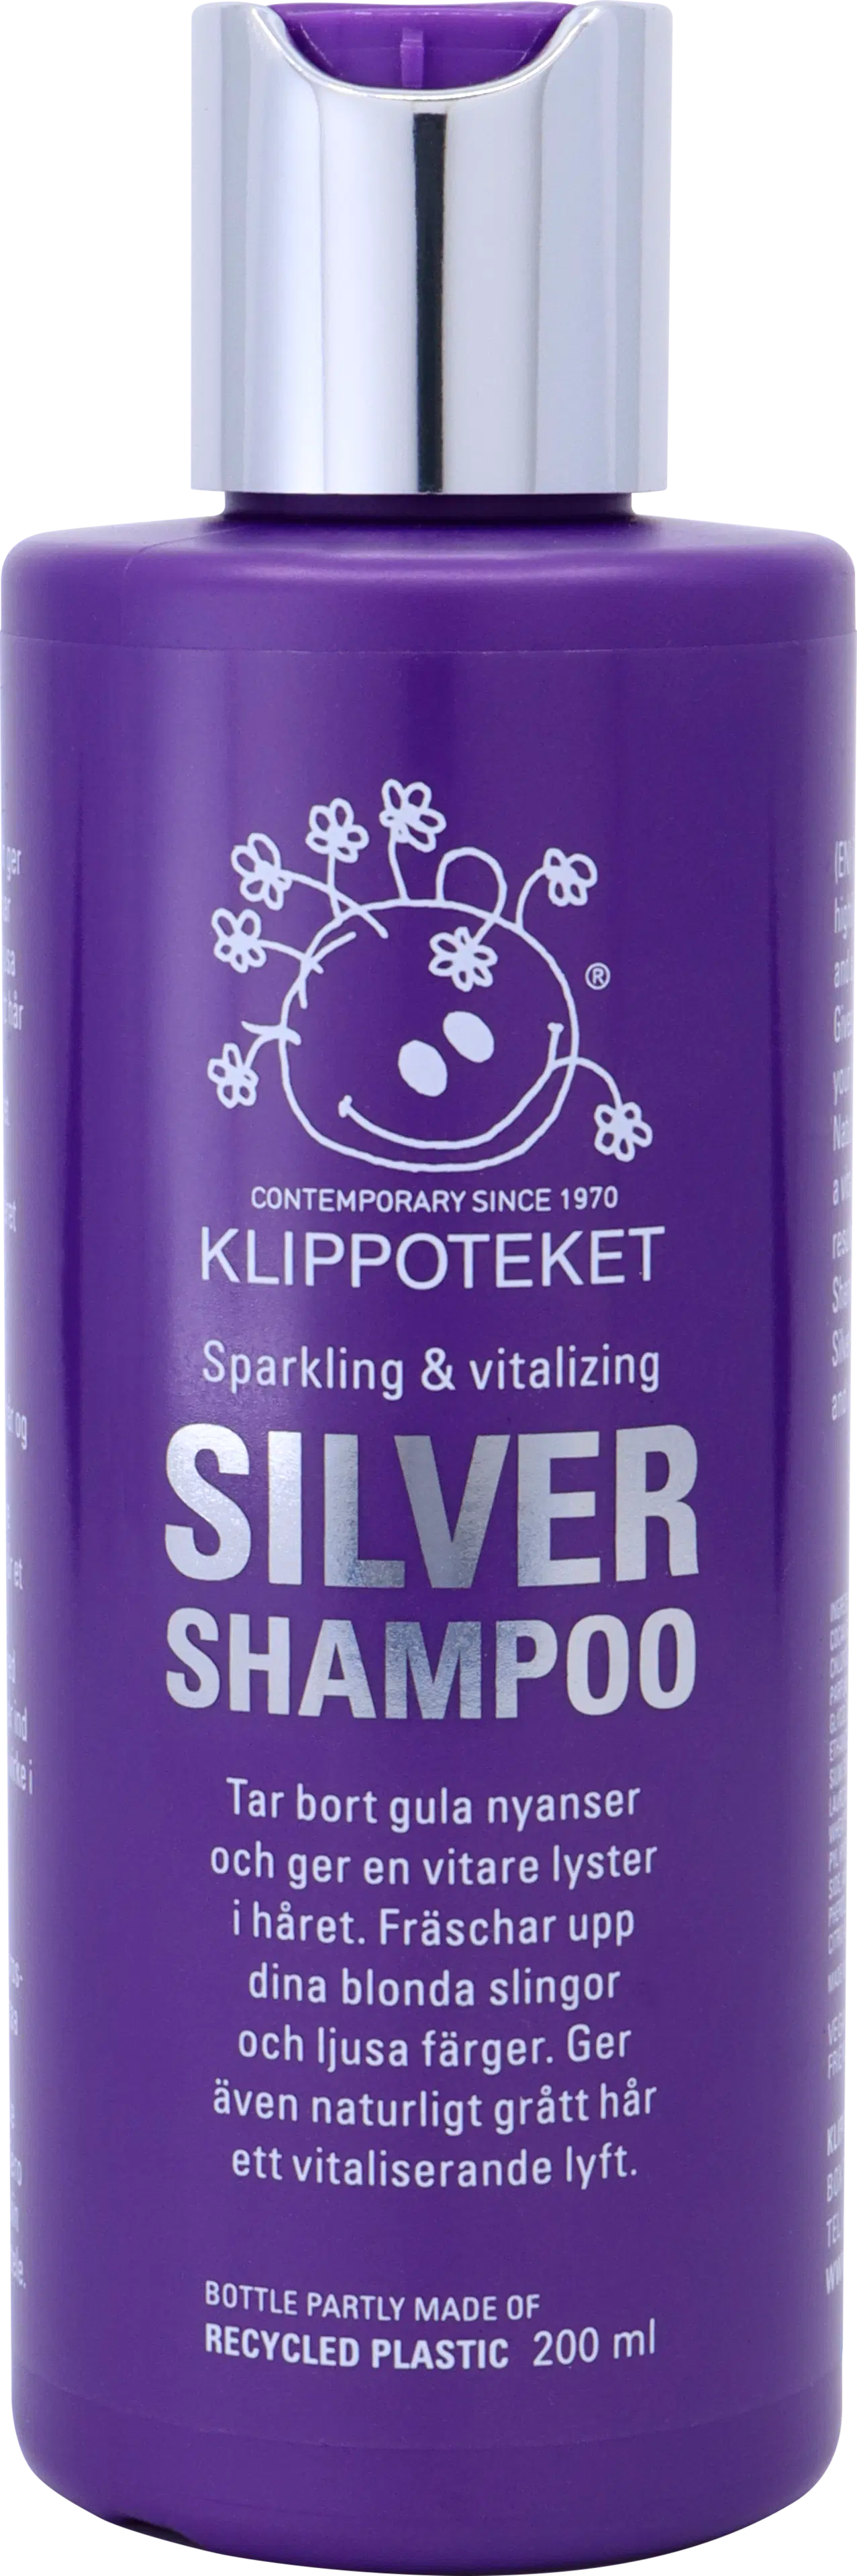 Klippoteket Silver shampoo 200 ml